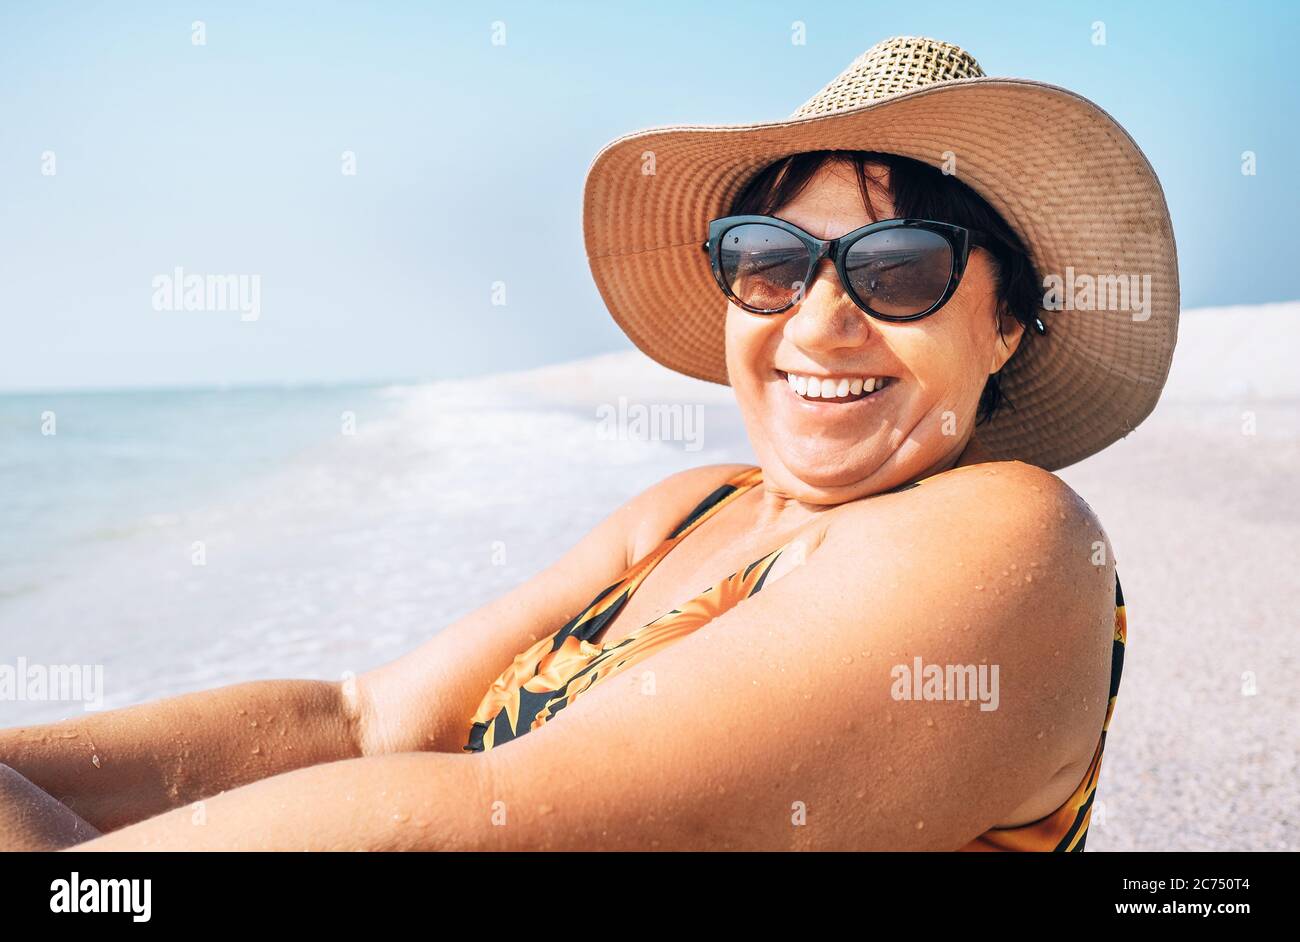 Glücklich lächelnde ältere Frau in Sonnenbrille und großen Hut nehmen Sonnenbad auf dem Seeseite Porträt Stockfoto